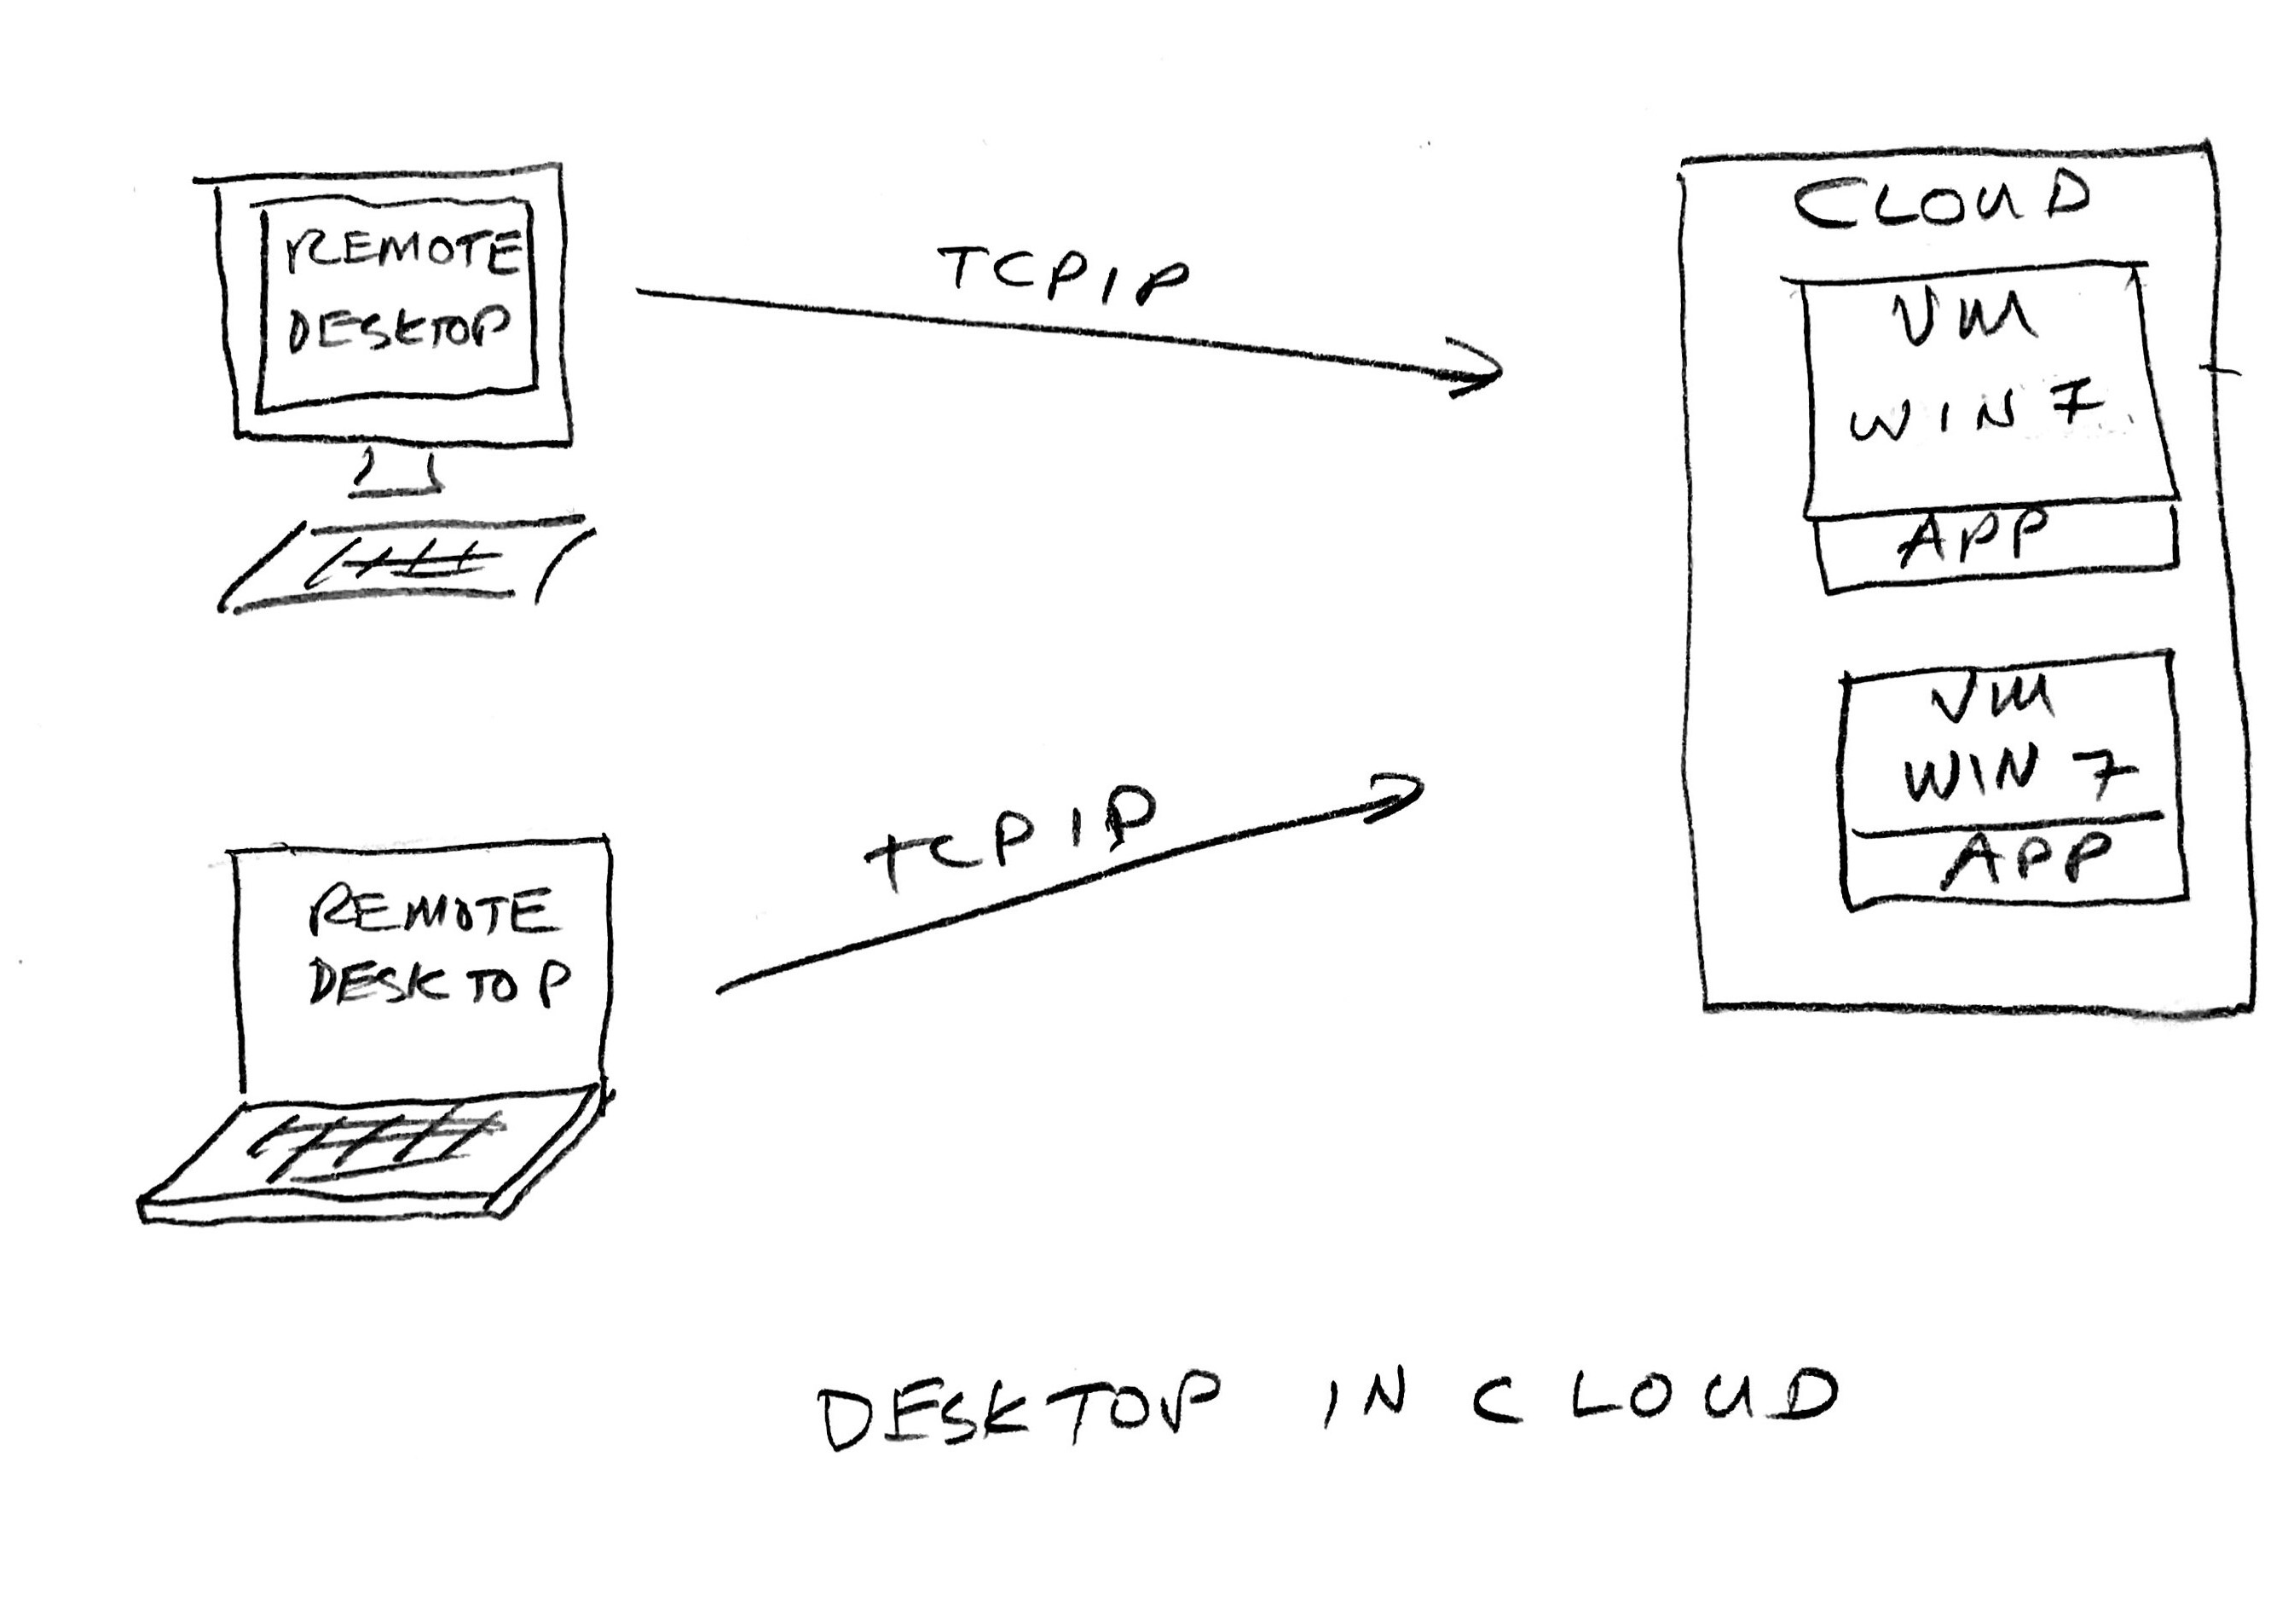 desktop in cloud